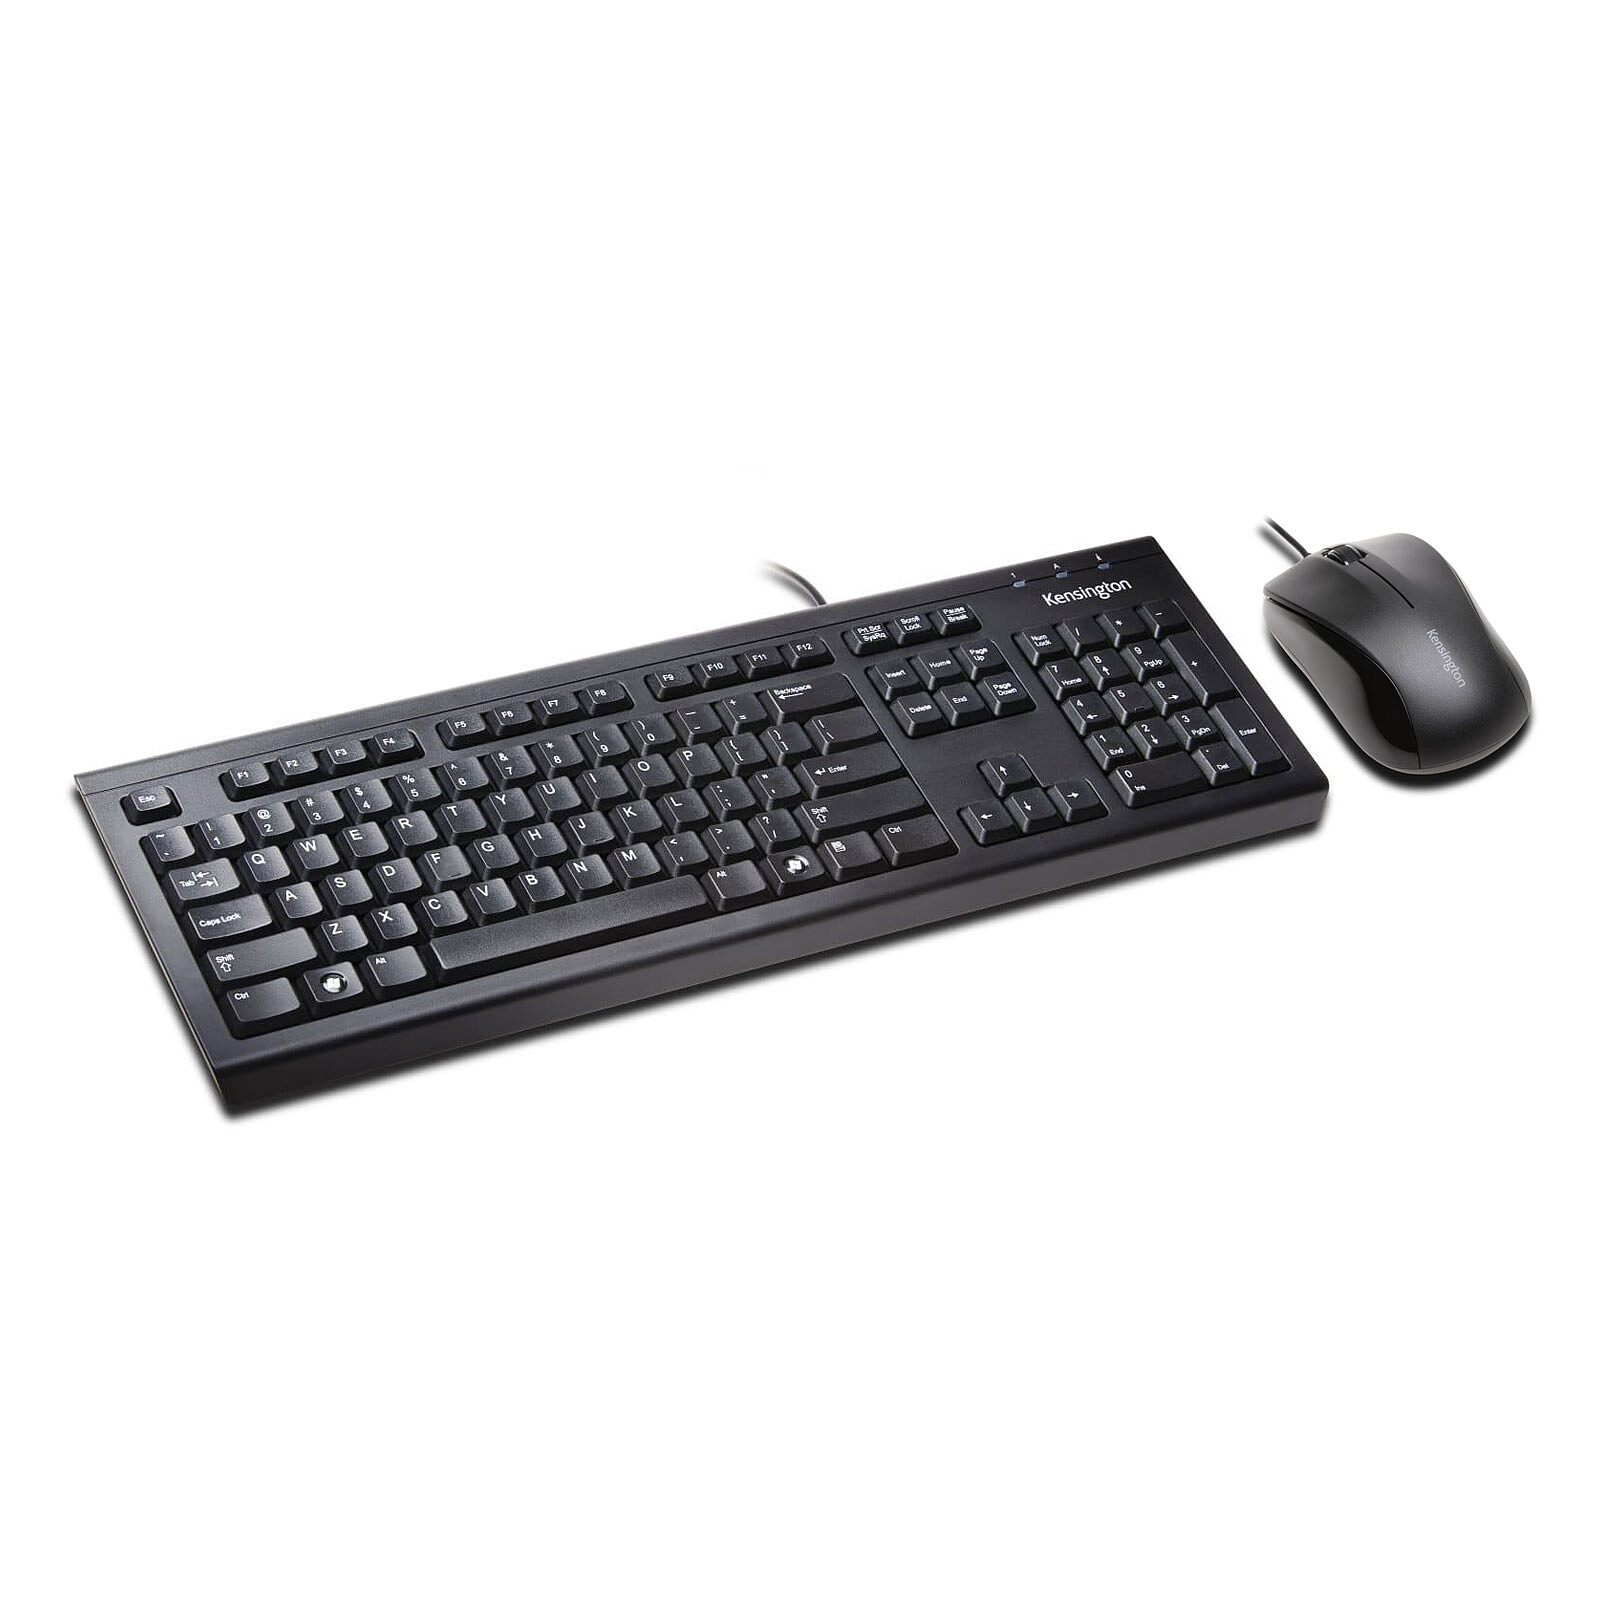 Microsoft Wired Keyboard 600 Noir - Clavier PC - Garantie 3 ans LDLC